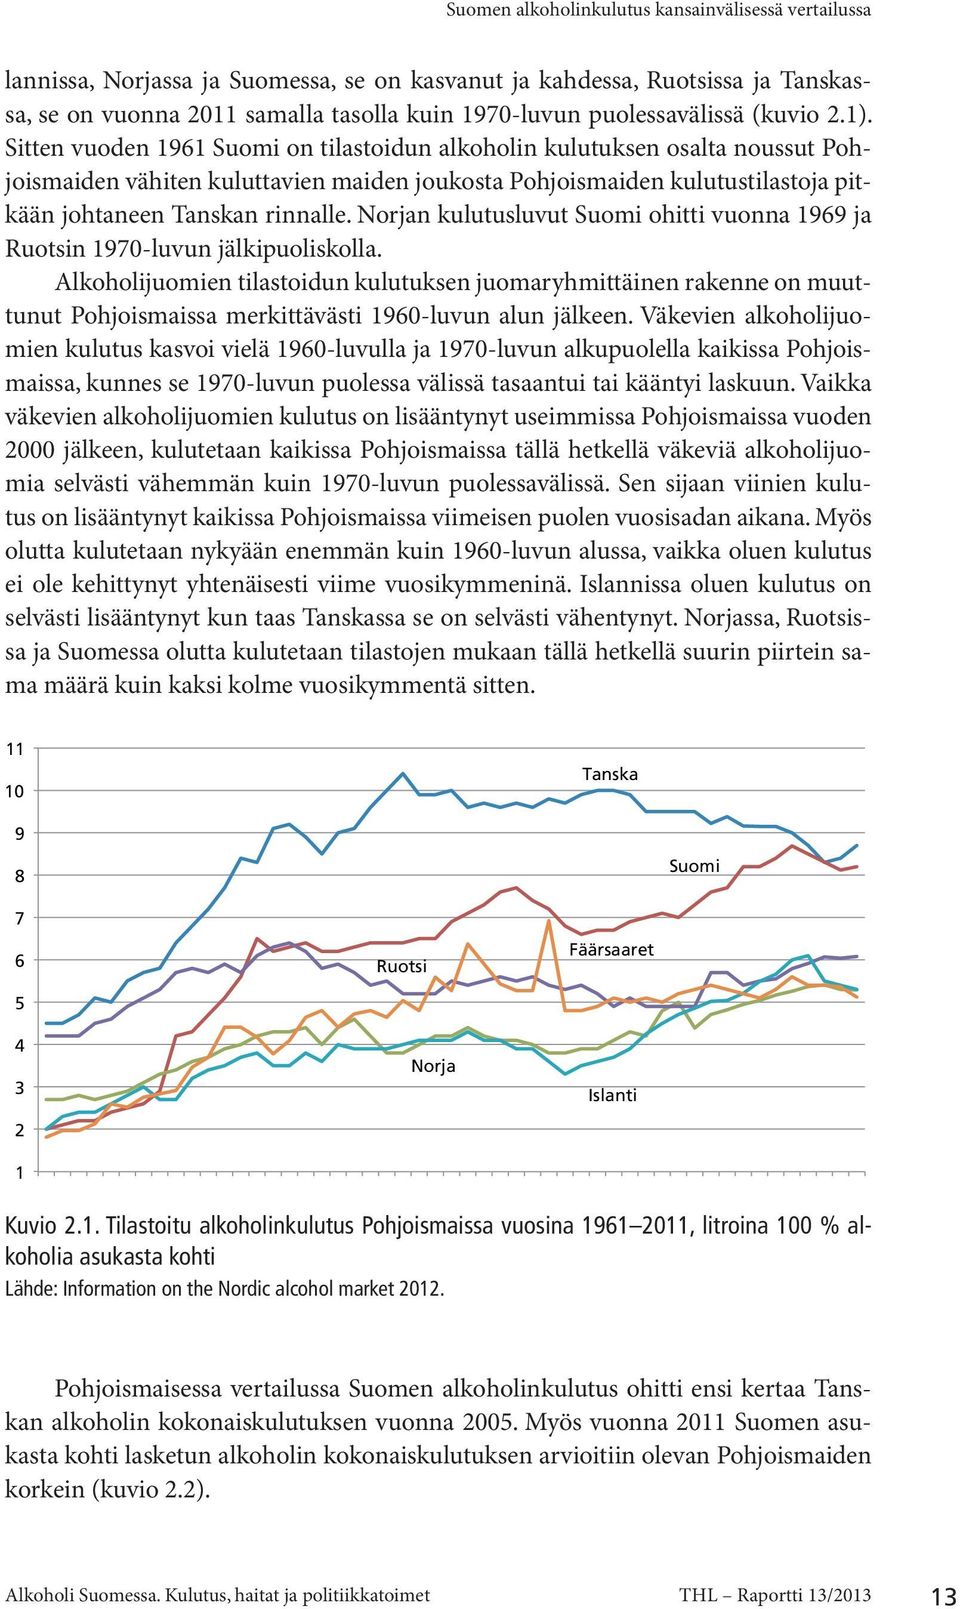 Sitten vuoden 1961 Suomi on tilastoidun alkoholin kulutuksen osalta noussut Pohjoismaiden vähiten kuluttavien maiden joukosta Pohjoismaiden kulutustilastoja pitkään johtaneen Tanskan rinnalle.